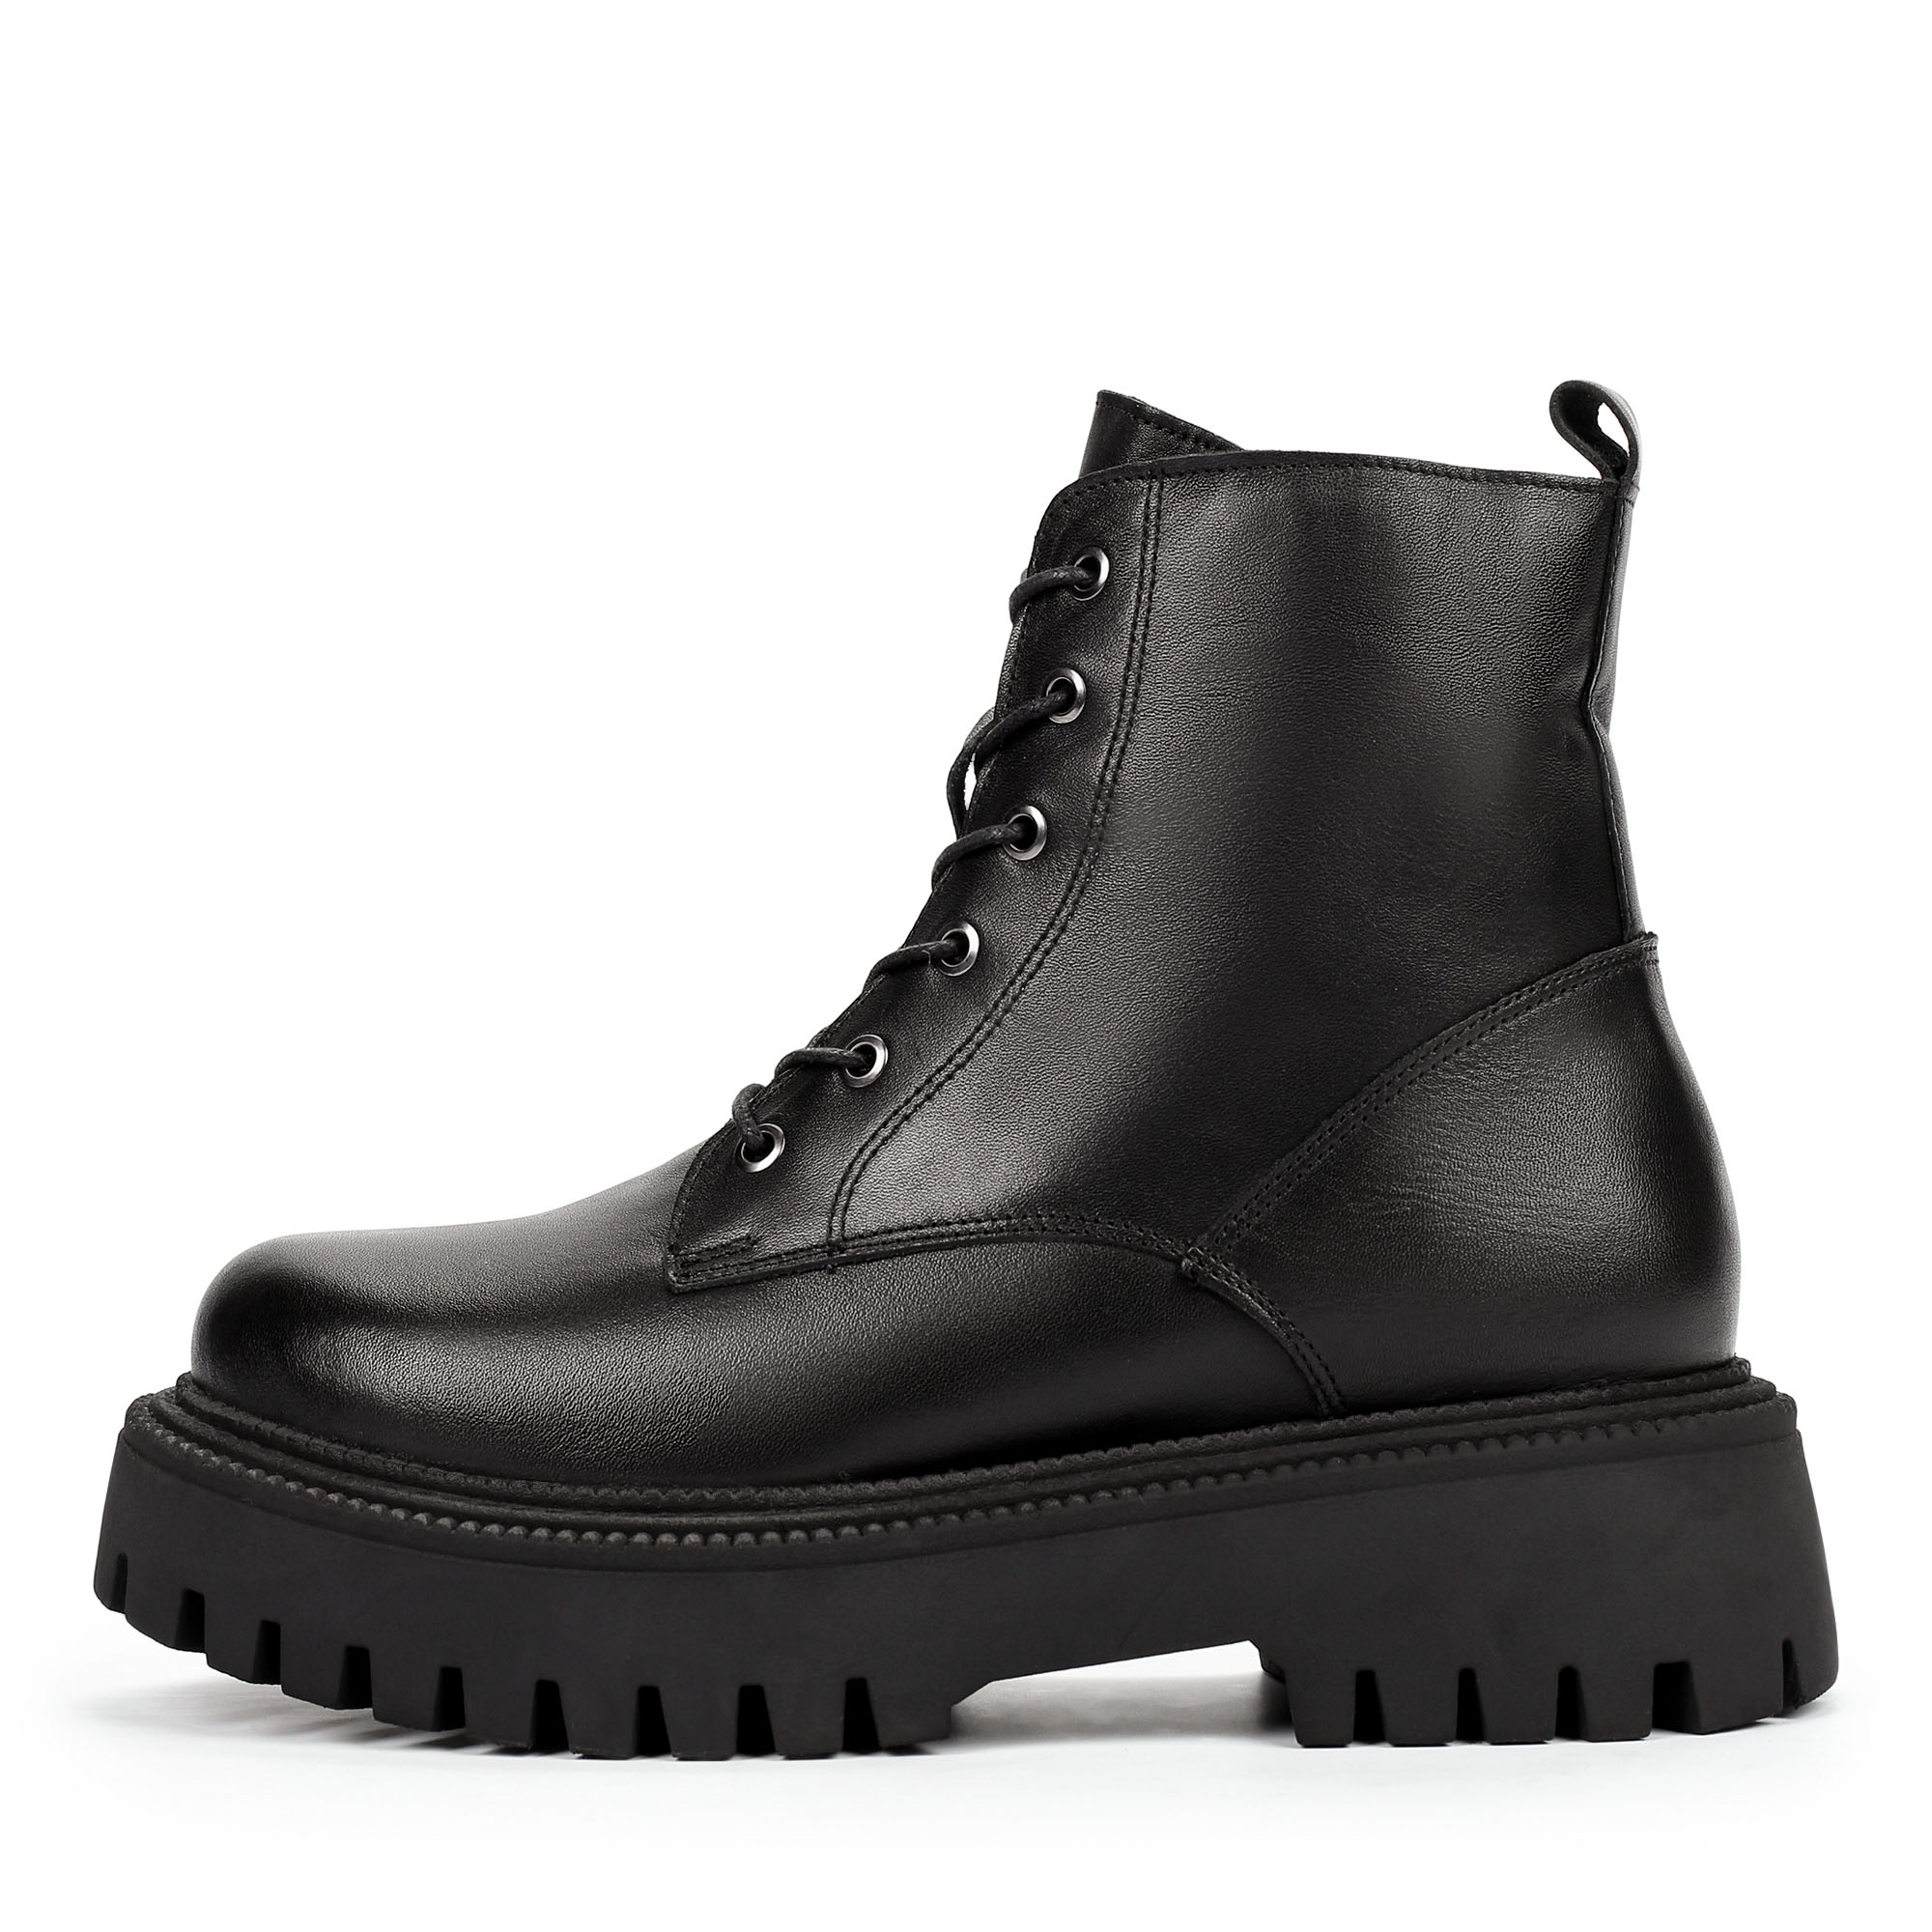 Ботинки Thomas Munz 506-145A-2102, цвет черный, размер 38